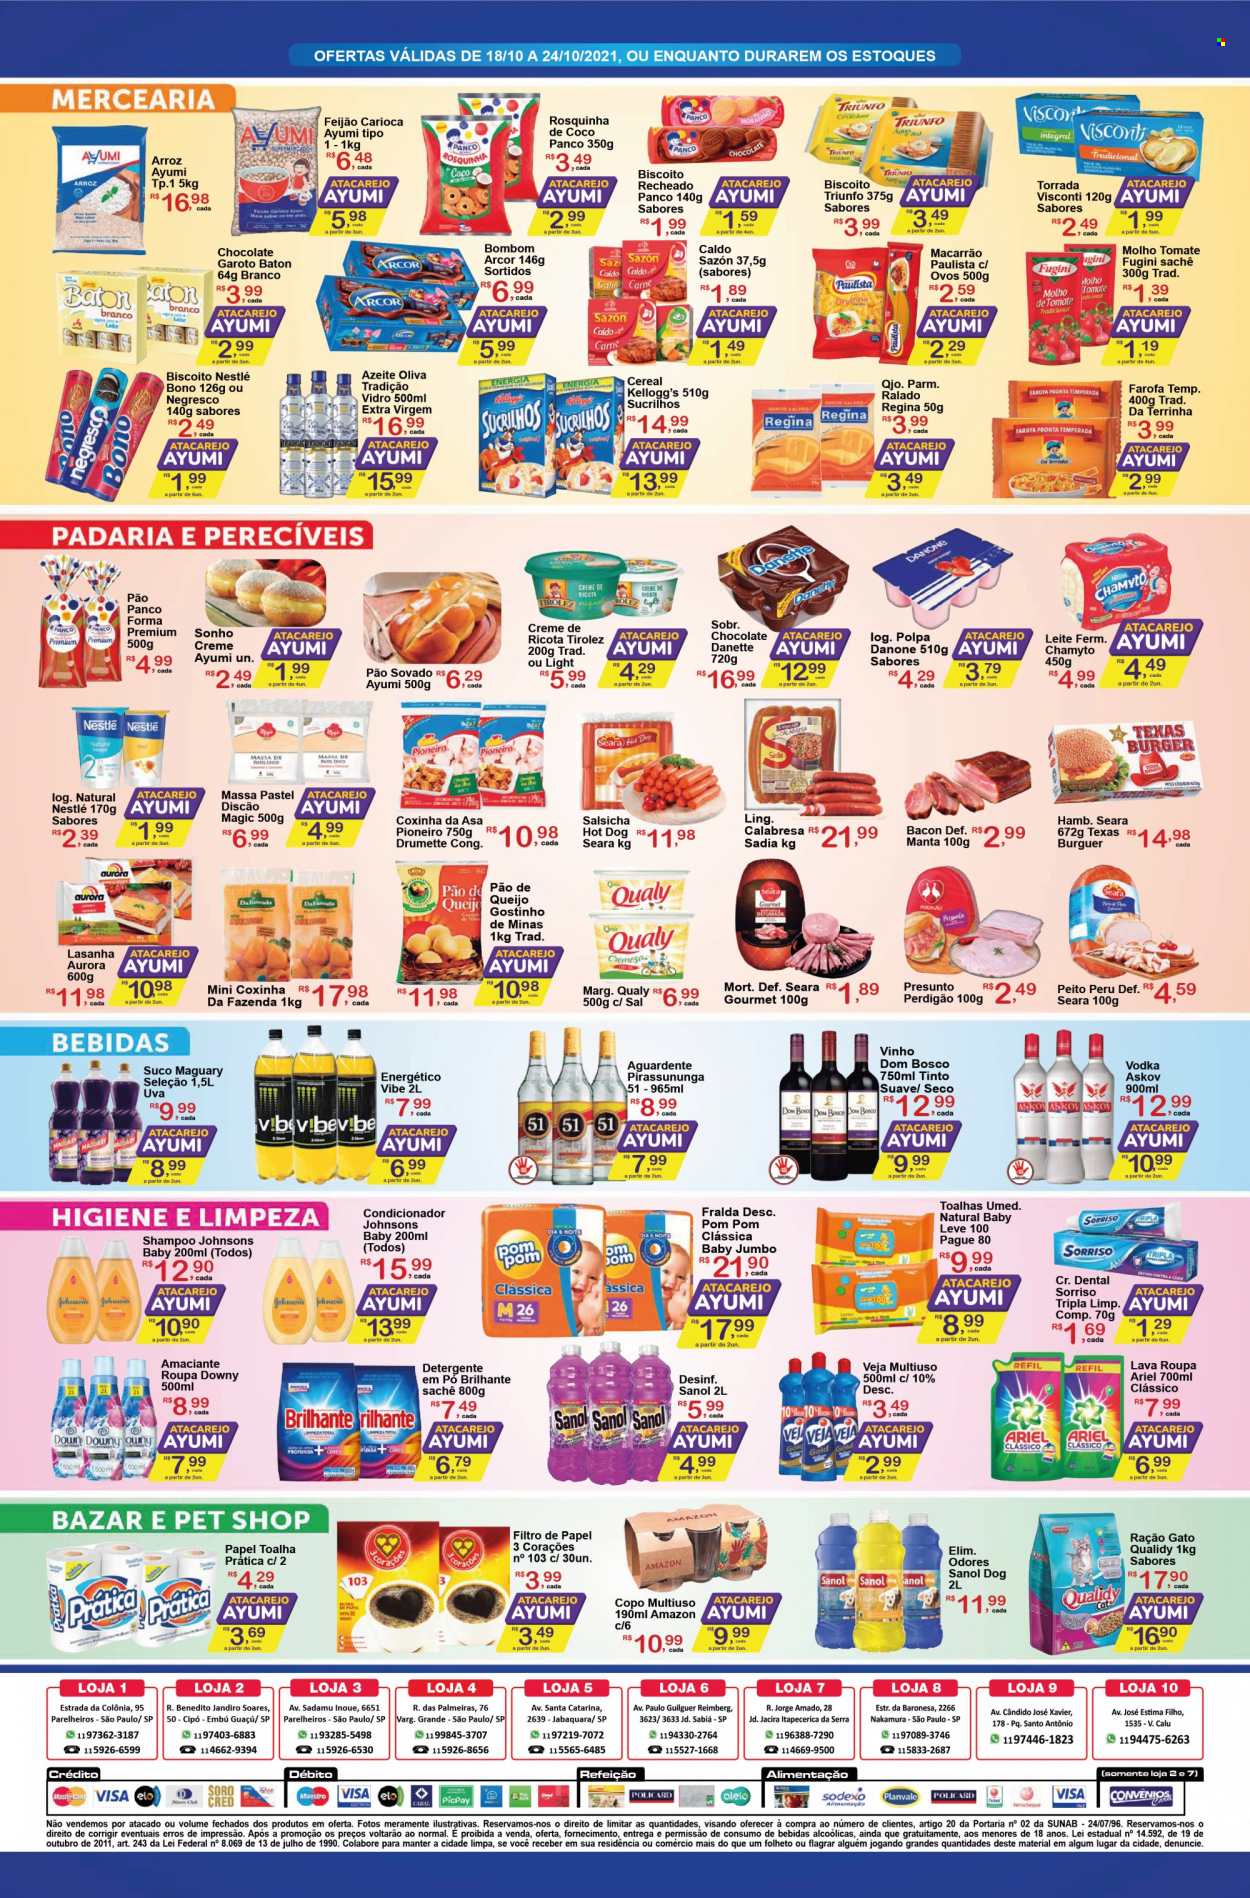 Encarte Ayumi Supermercados  - 18.10.2021 - 24.10.2021.